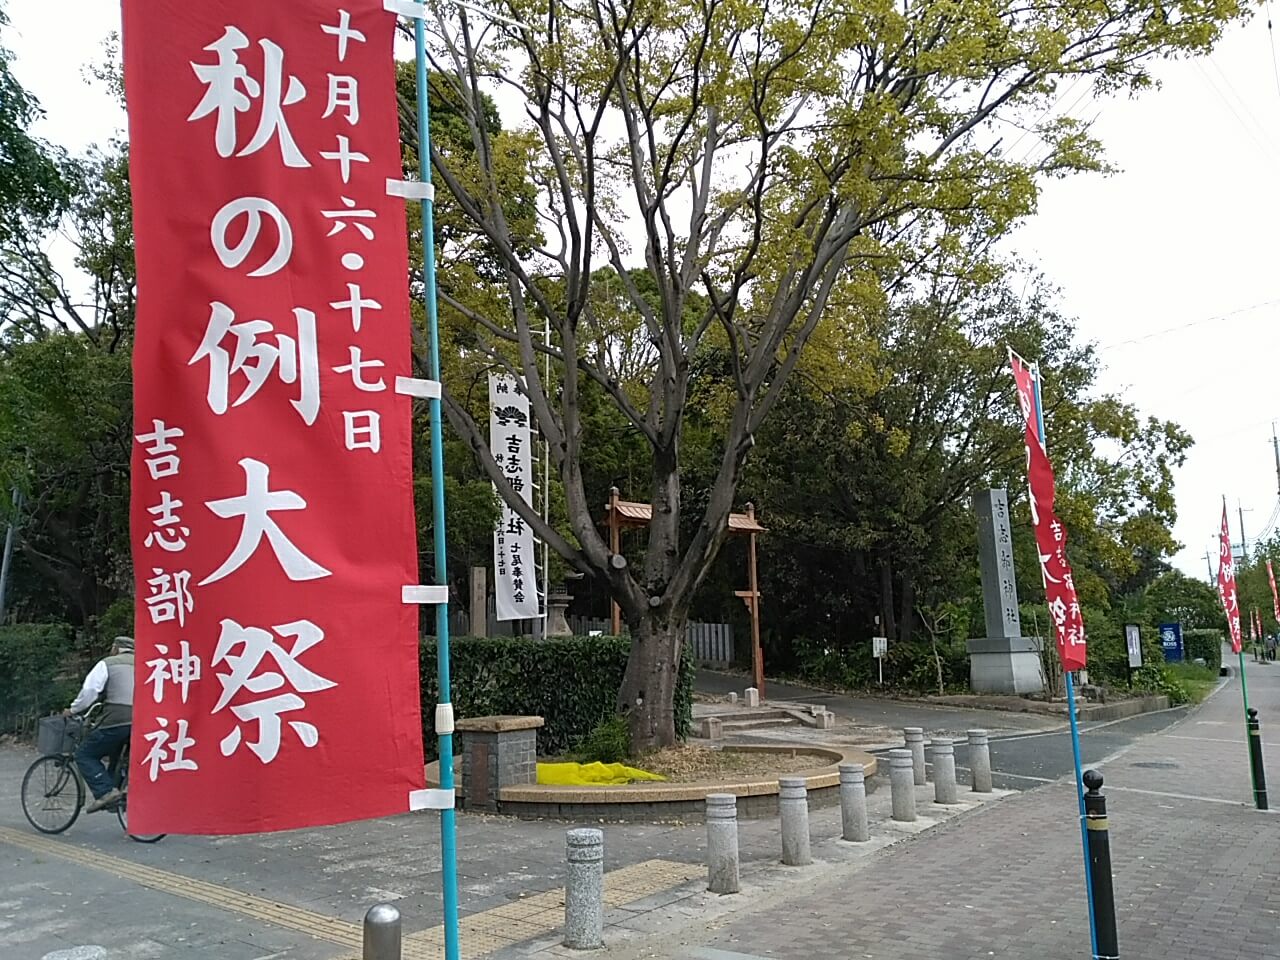 吉志部神社 秋の例祭